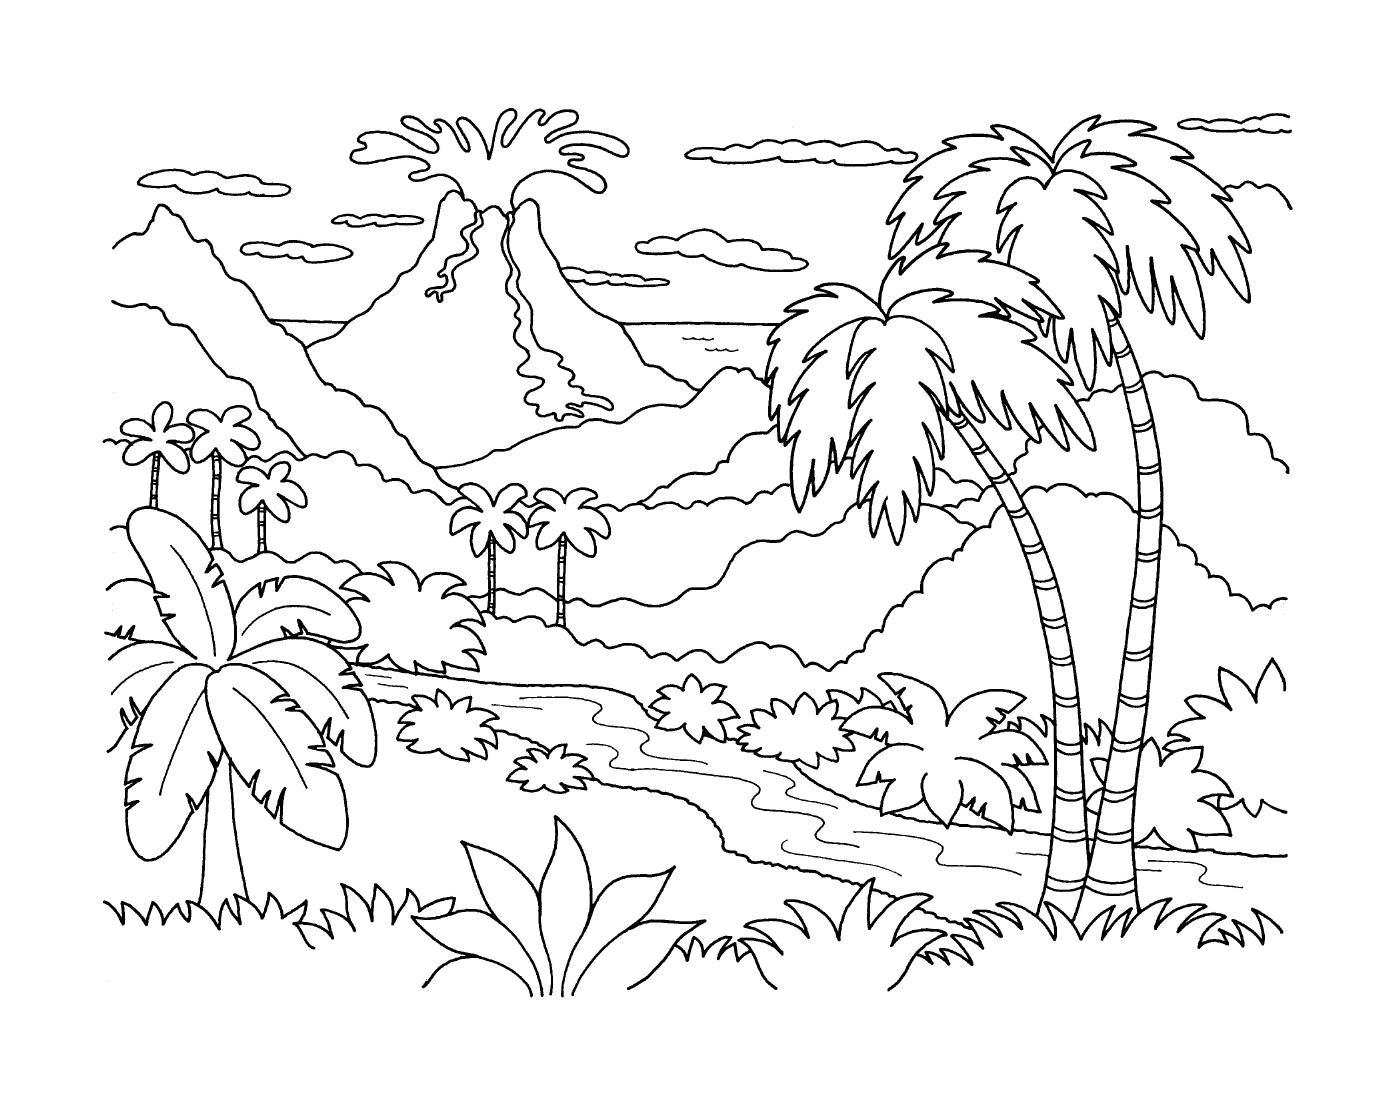  Uma paisagem com um vulcão 